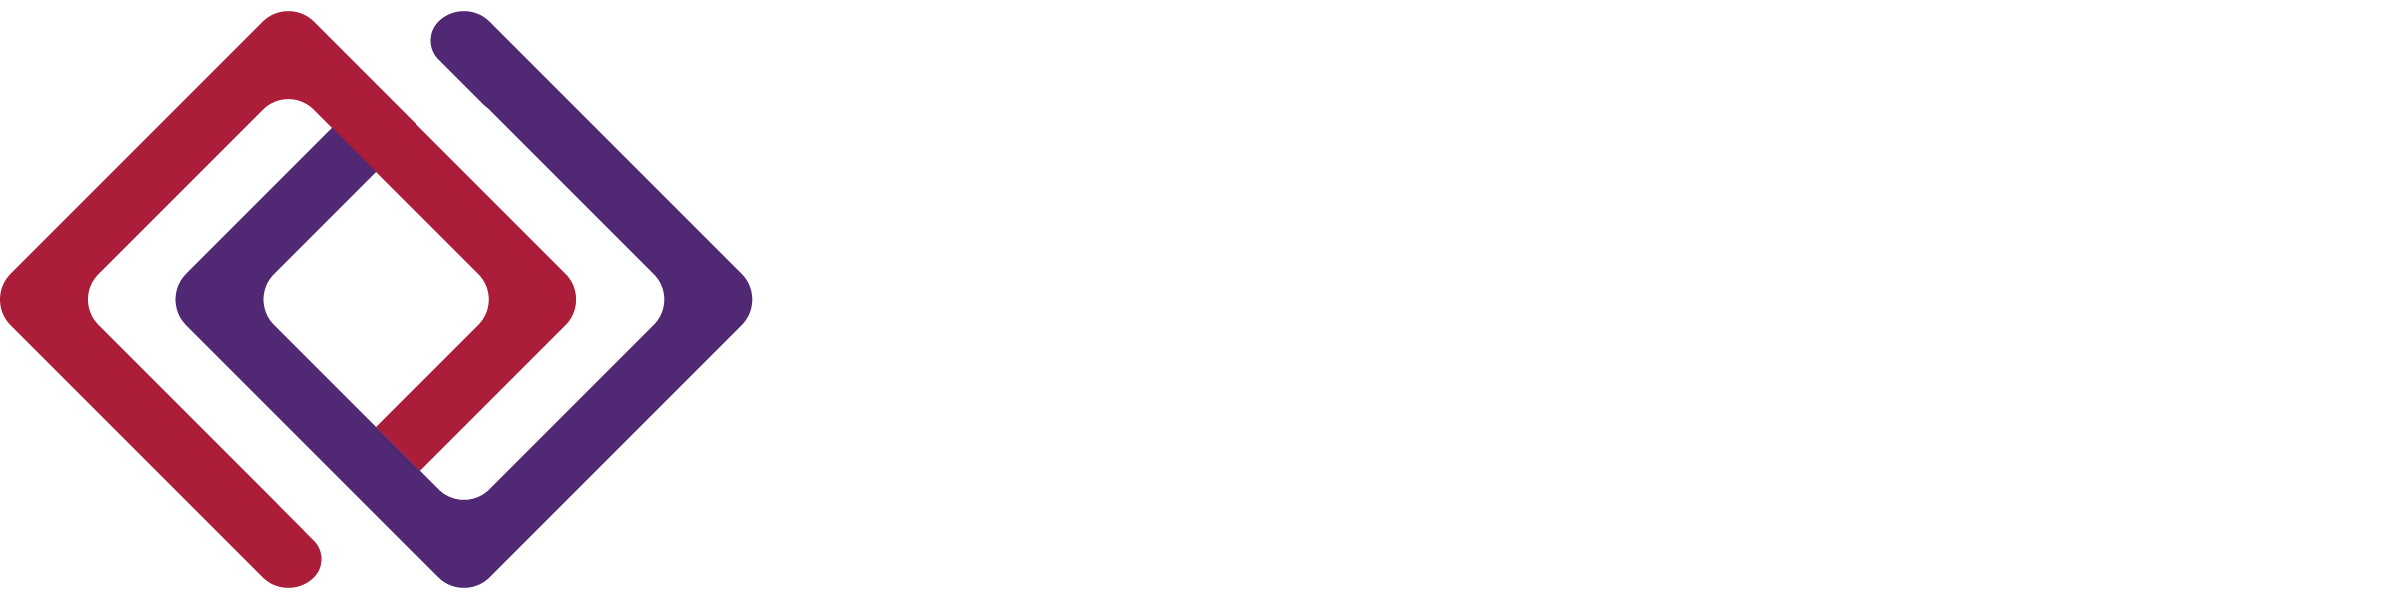 Excelsior Fund